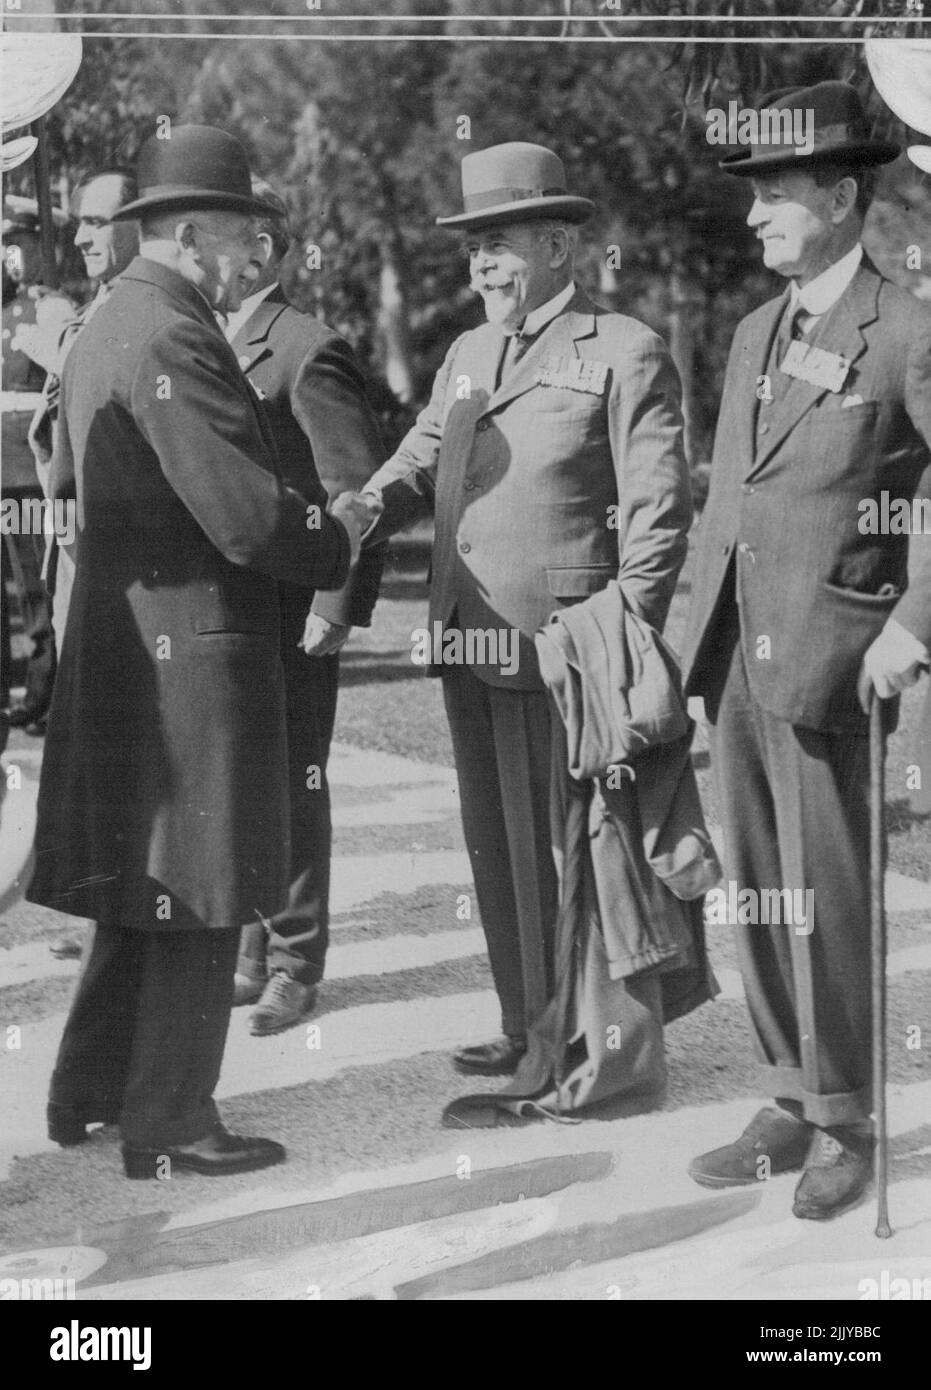 El duque de Connaught inspecciona la Legión Británica. -- el Dukeo de Connaught, que se encuentra actualmente en su ciudad de Cap Ferrat, inspeccionando en los terrenos a miembros de las ramas de NICE y Monaco de la Legión Británica. También inspeccionó un destacamento de H.K.S. Reina Isabel. S.A.R. está estrechando la mano con el almirante Sir Ernest Grant, miembro de la Legión. 24 de mayo de 1932. (Foto de Central News) Foto de stock